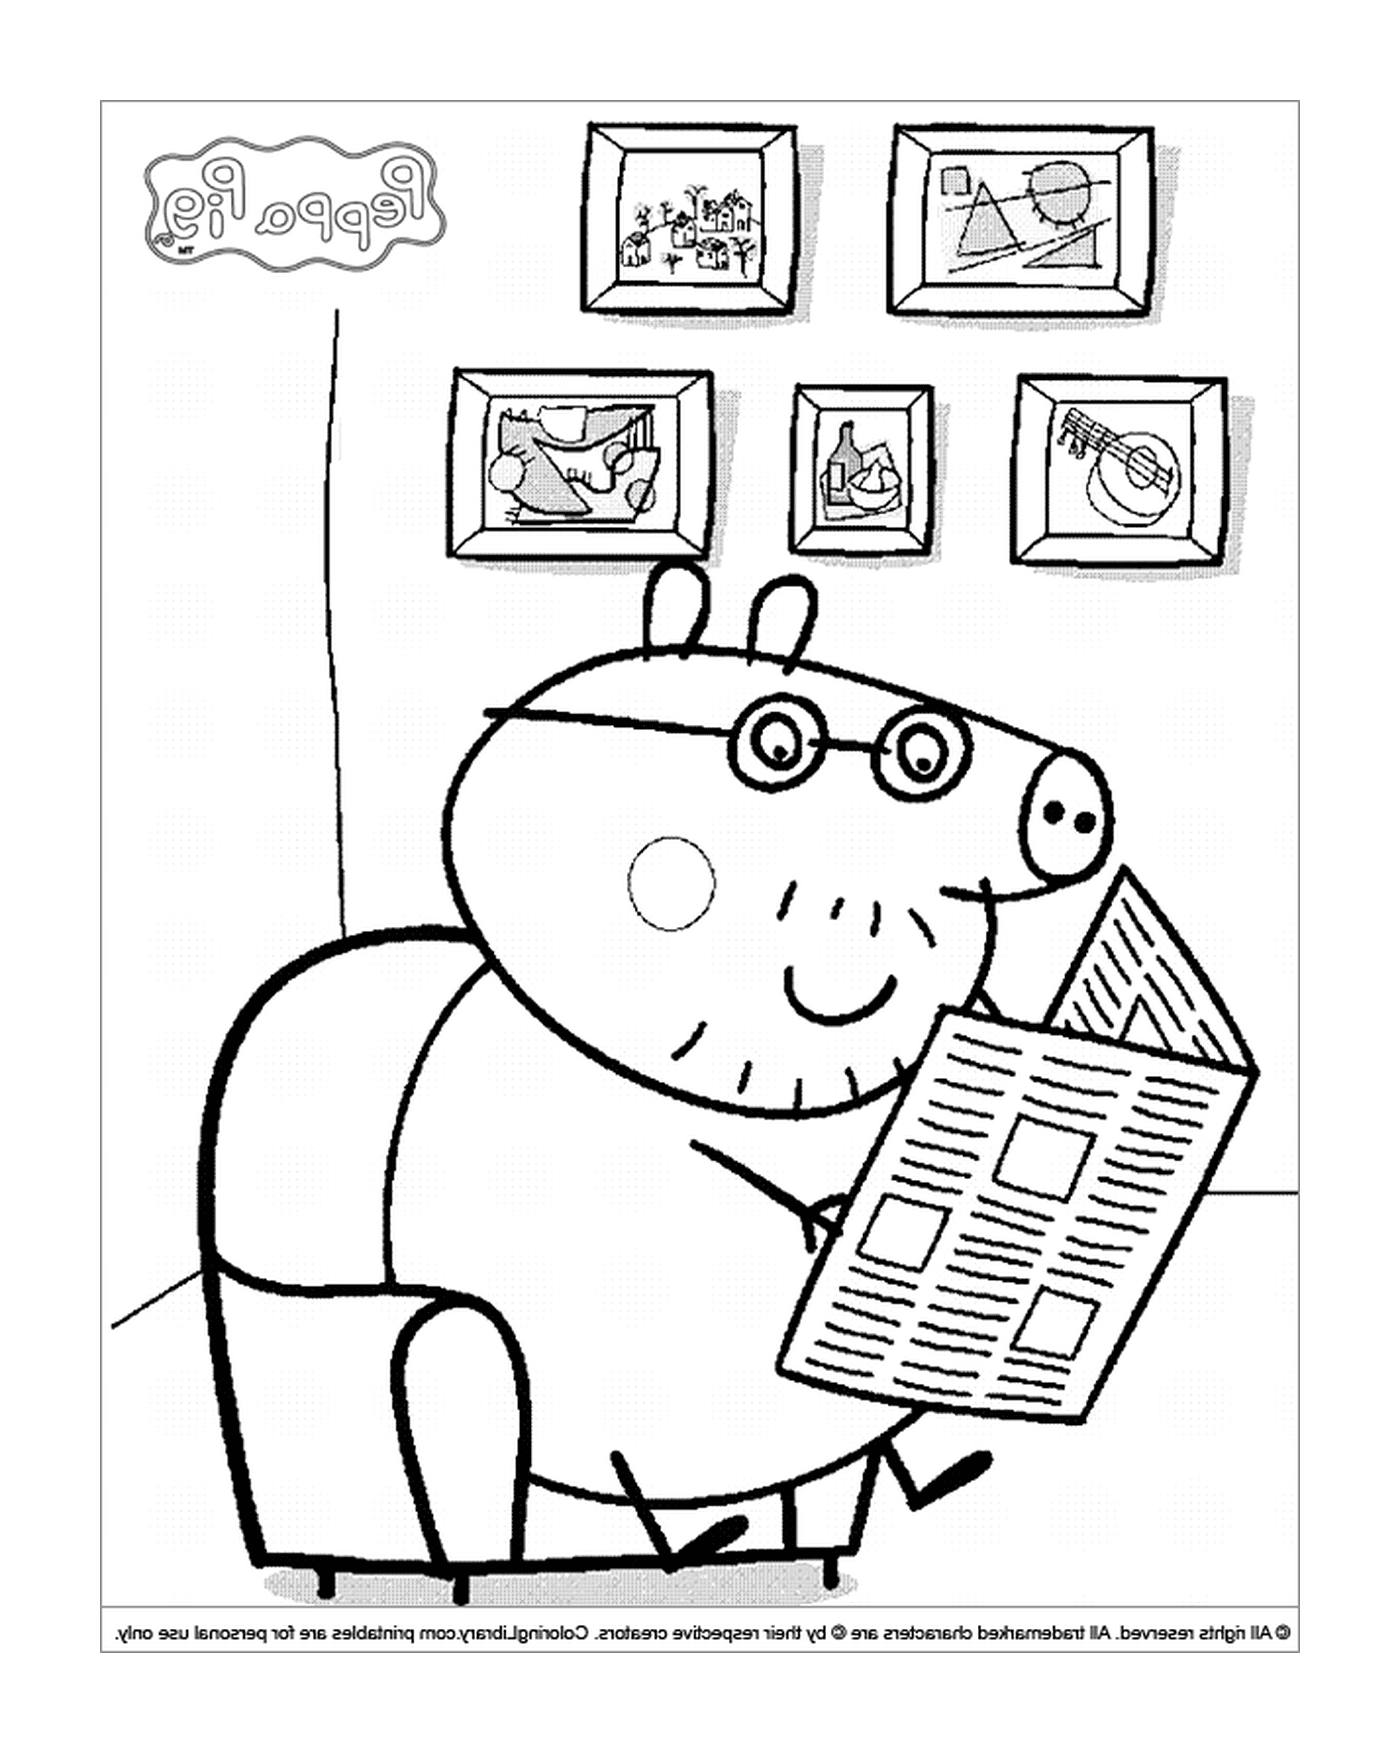   Un cochon lisant un journal 